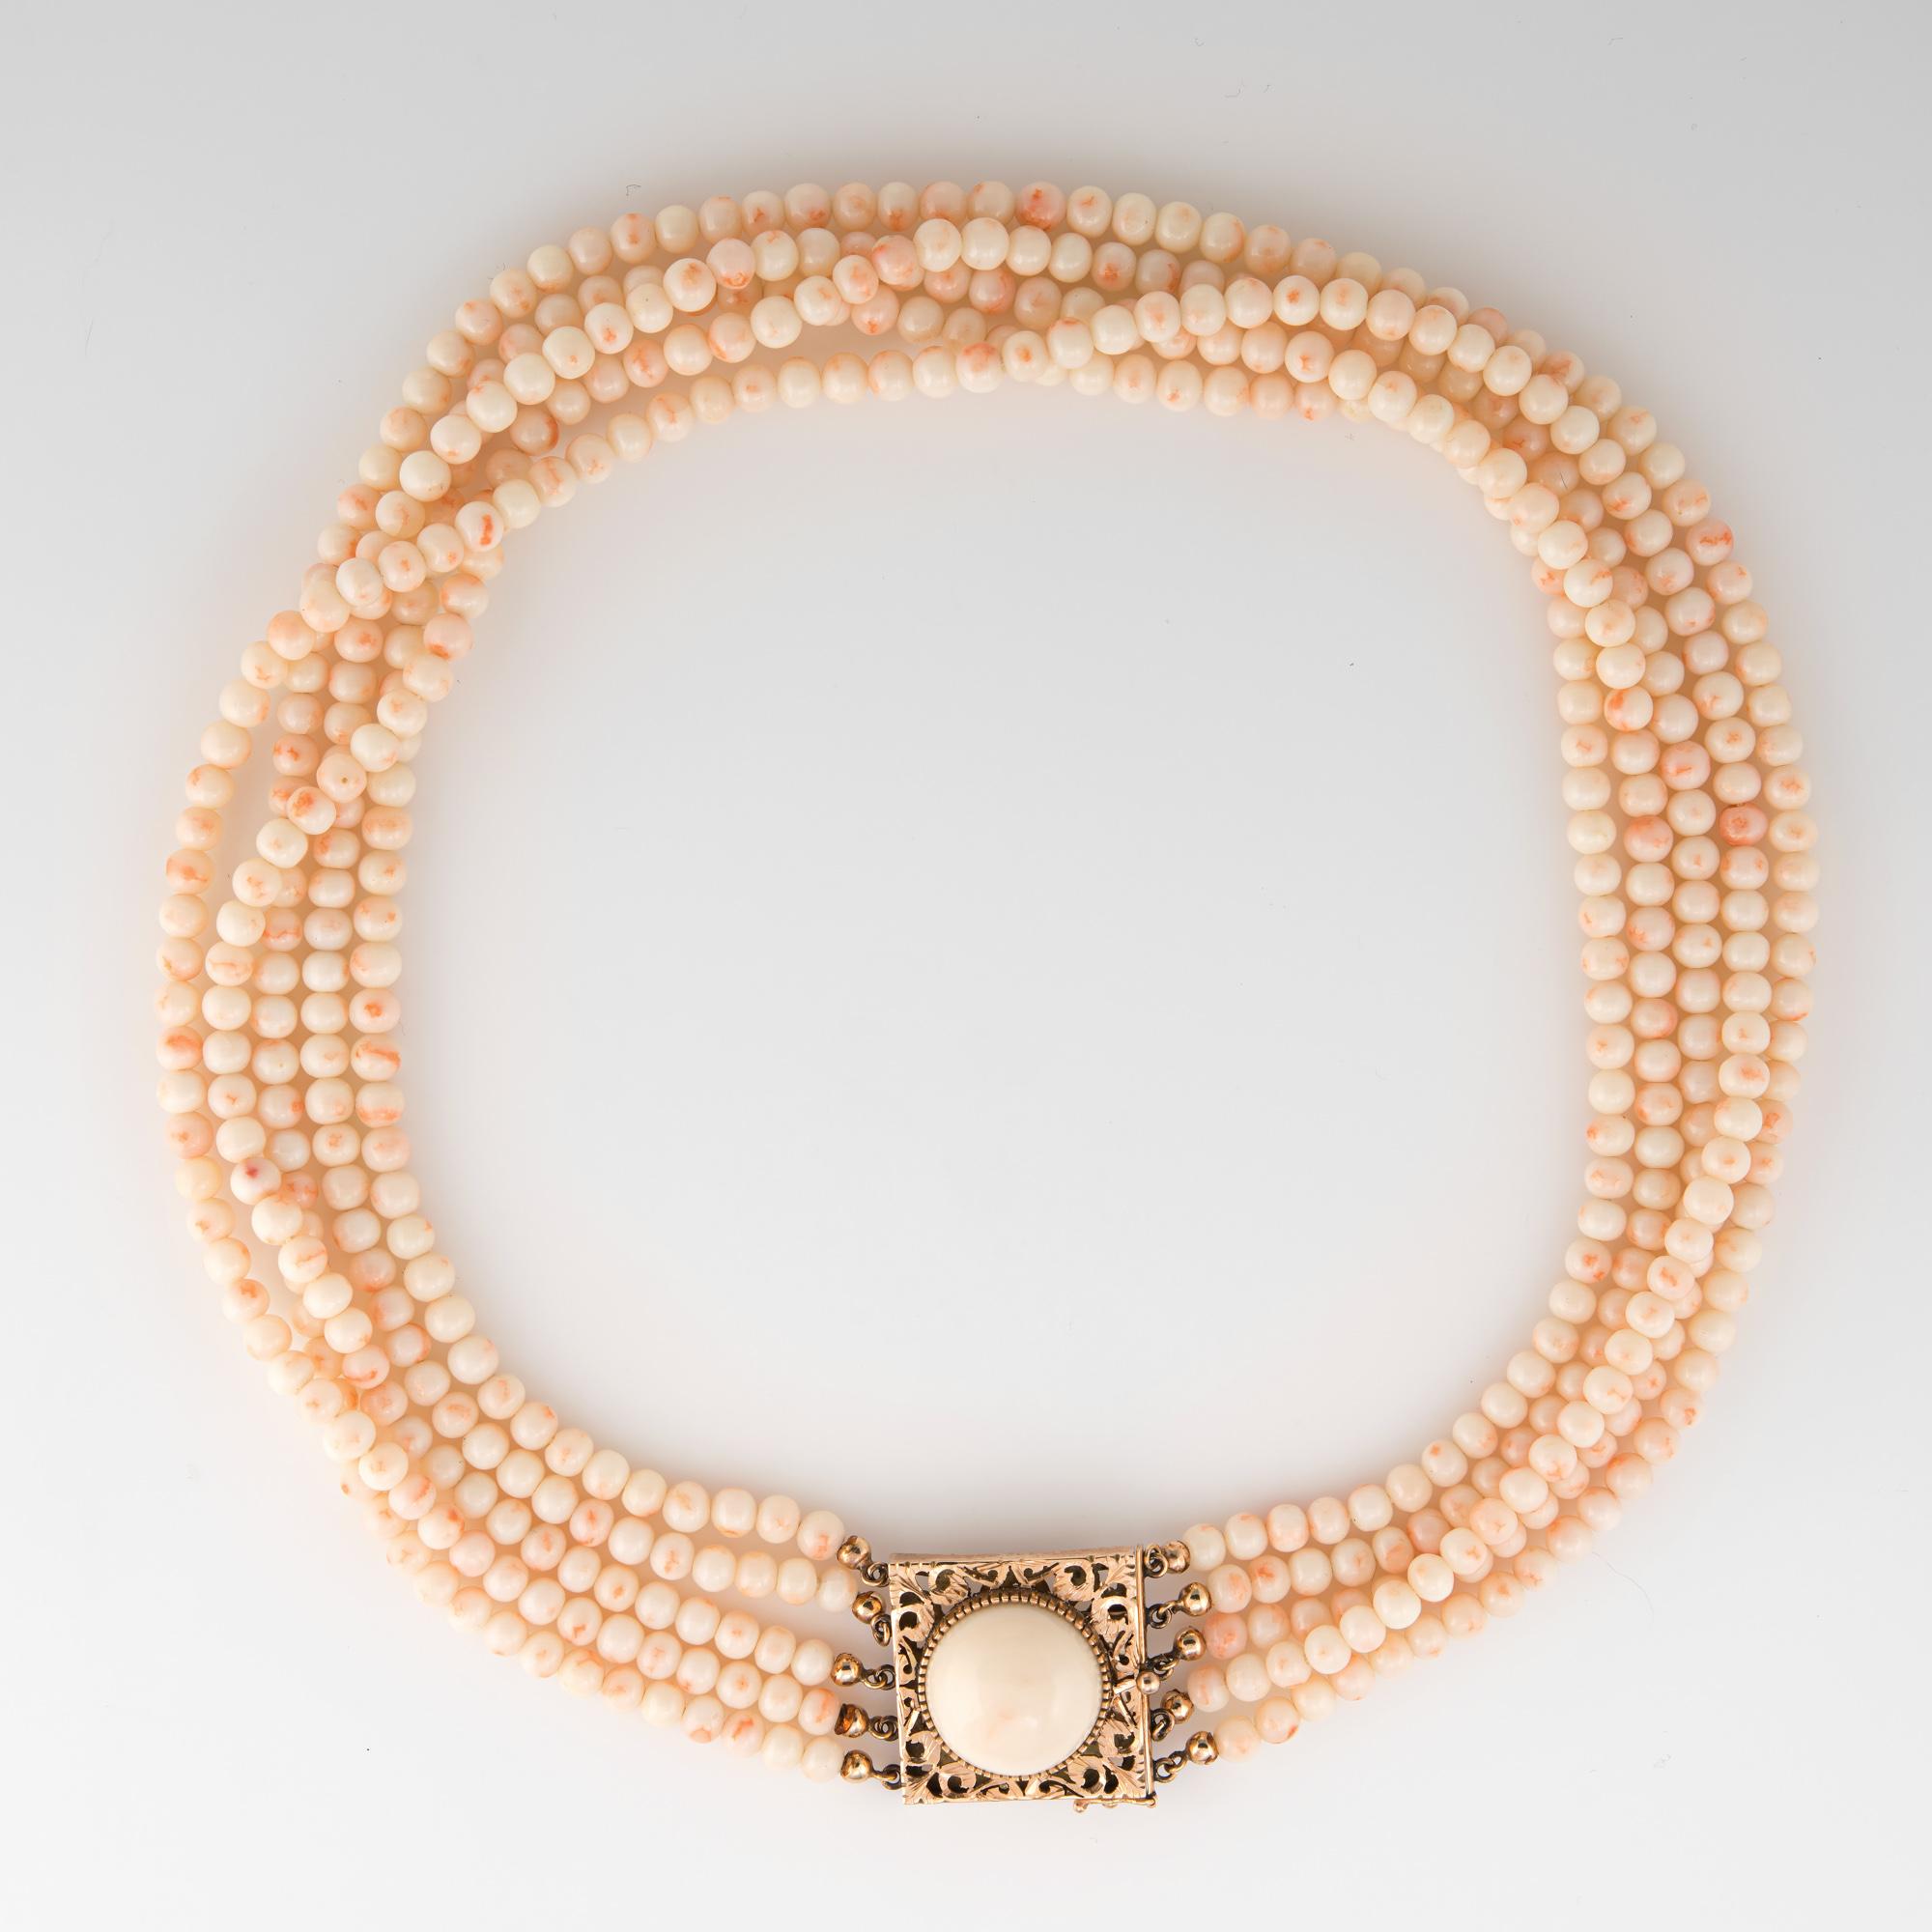 Collier vintage en corail peau d'ange finement détaillé, terminé par un fermoir en or jaune 14 carats (vers les années 1950 à 1960). 

5 rangs de perles de corail peau d'ange de taille uniforme mesurant 4,5 mm chacun. Le fermoir est serti d'un